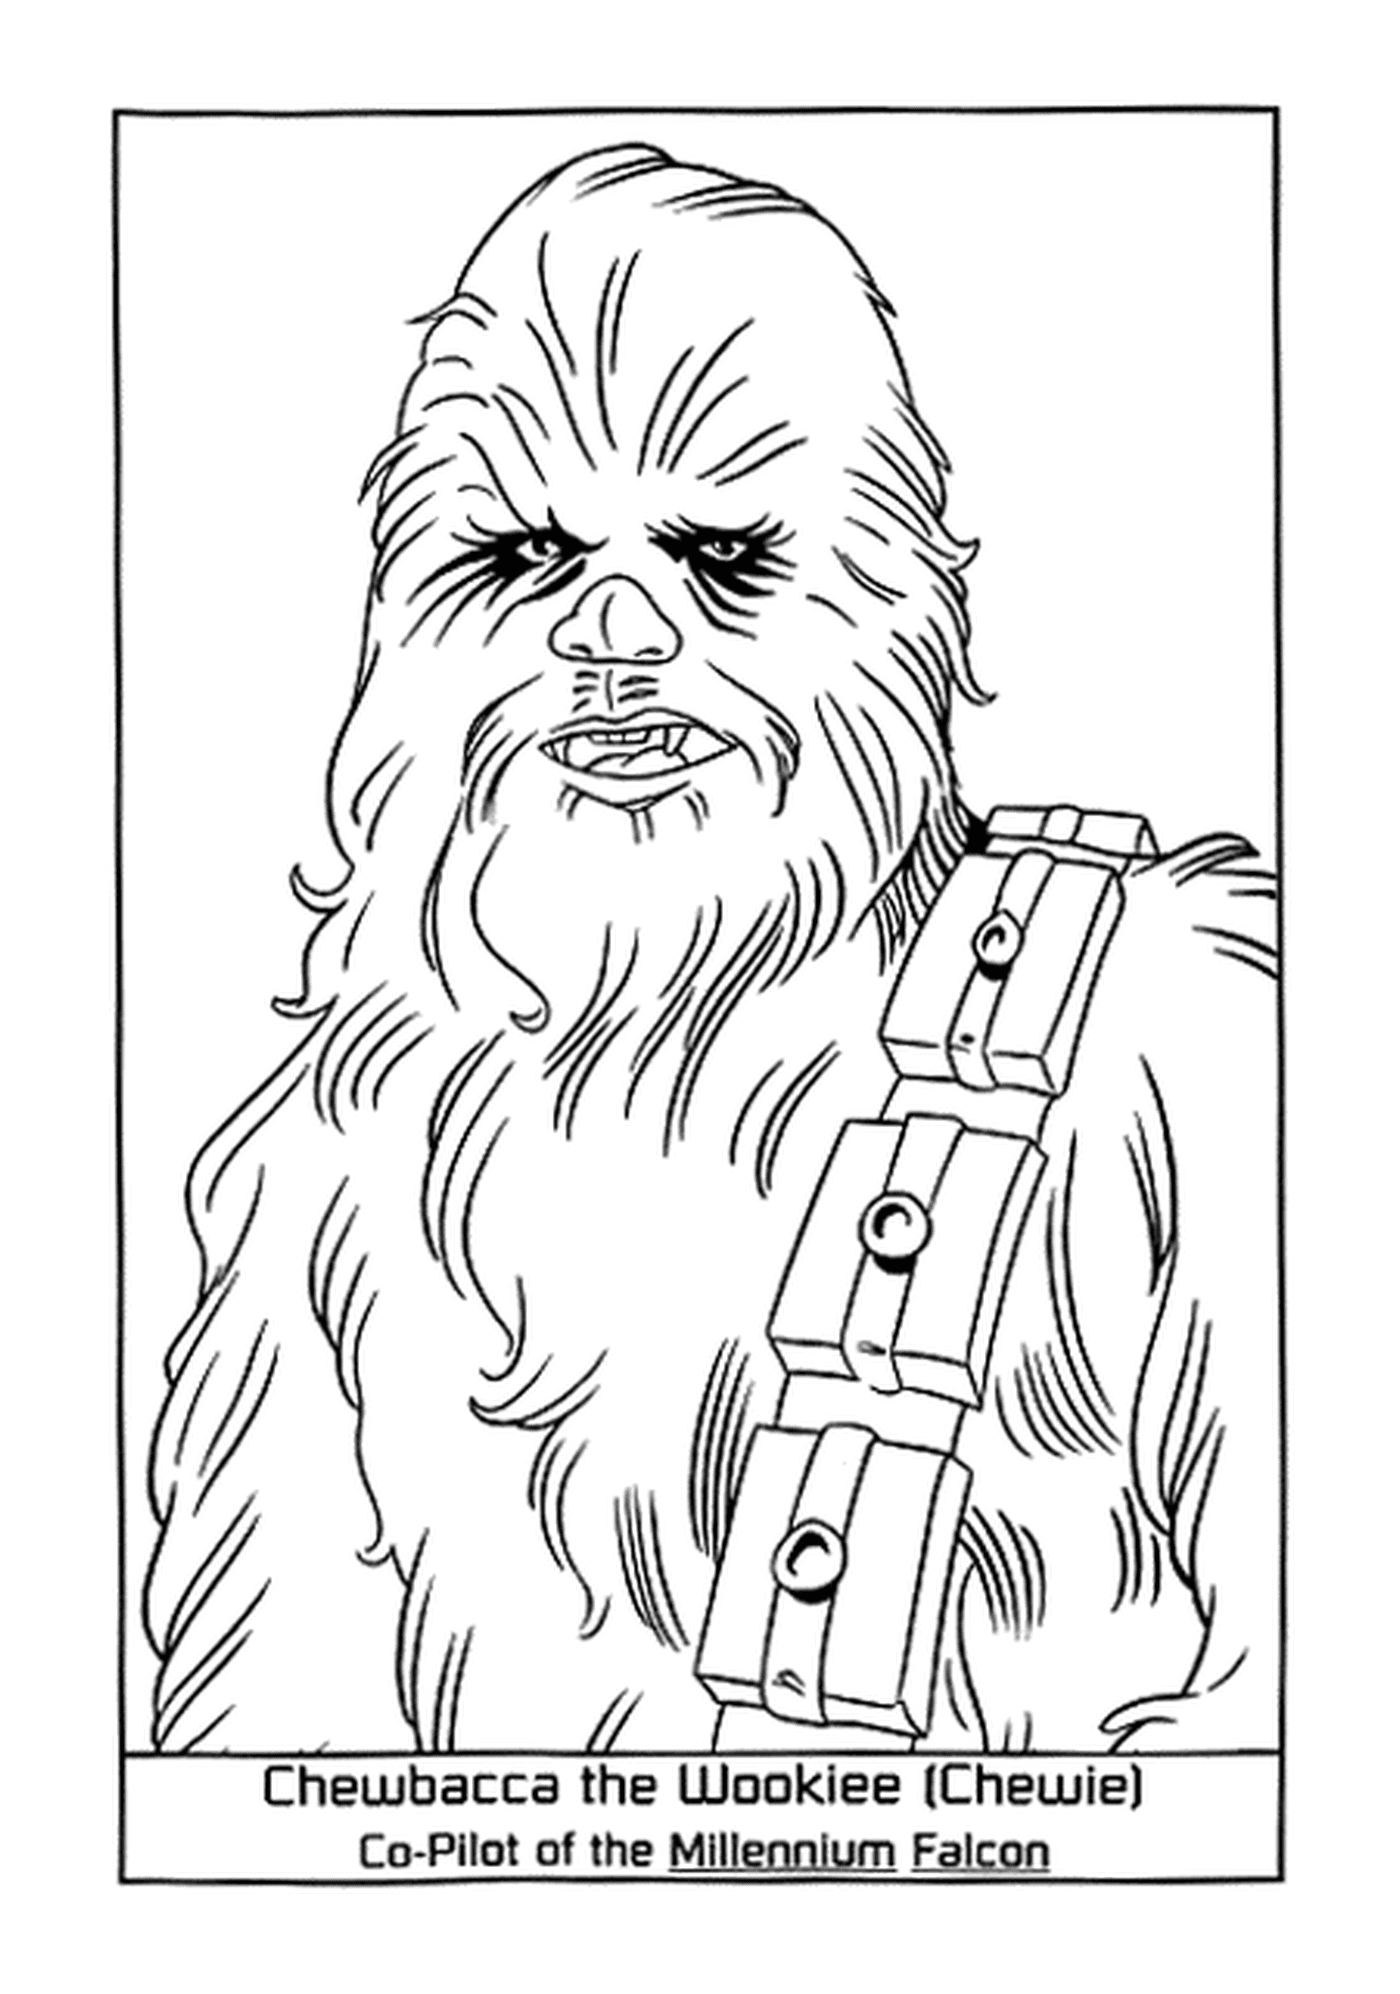  La fedele Chewbacca Wookiee 